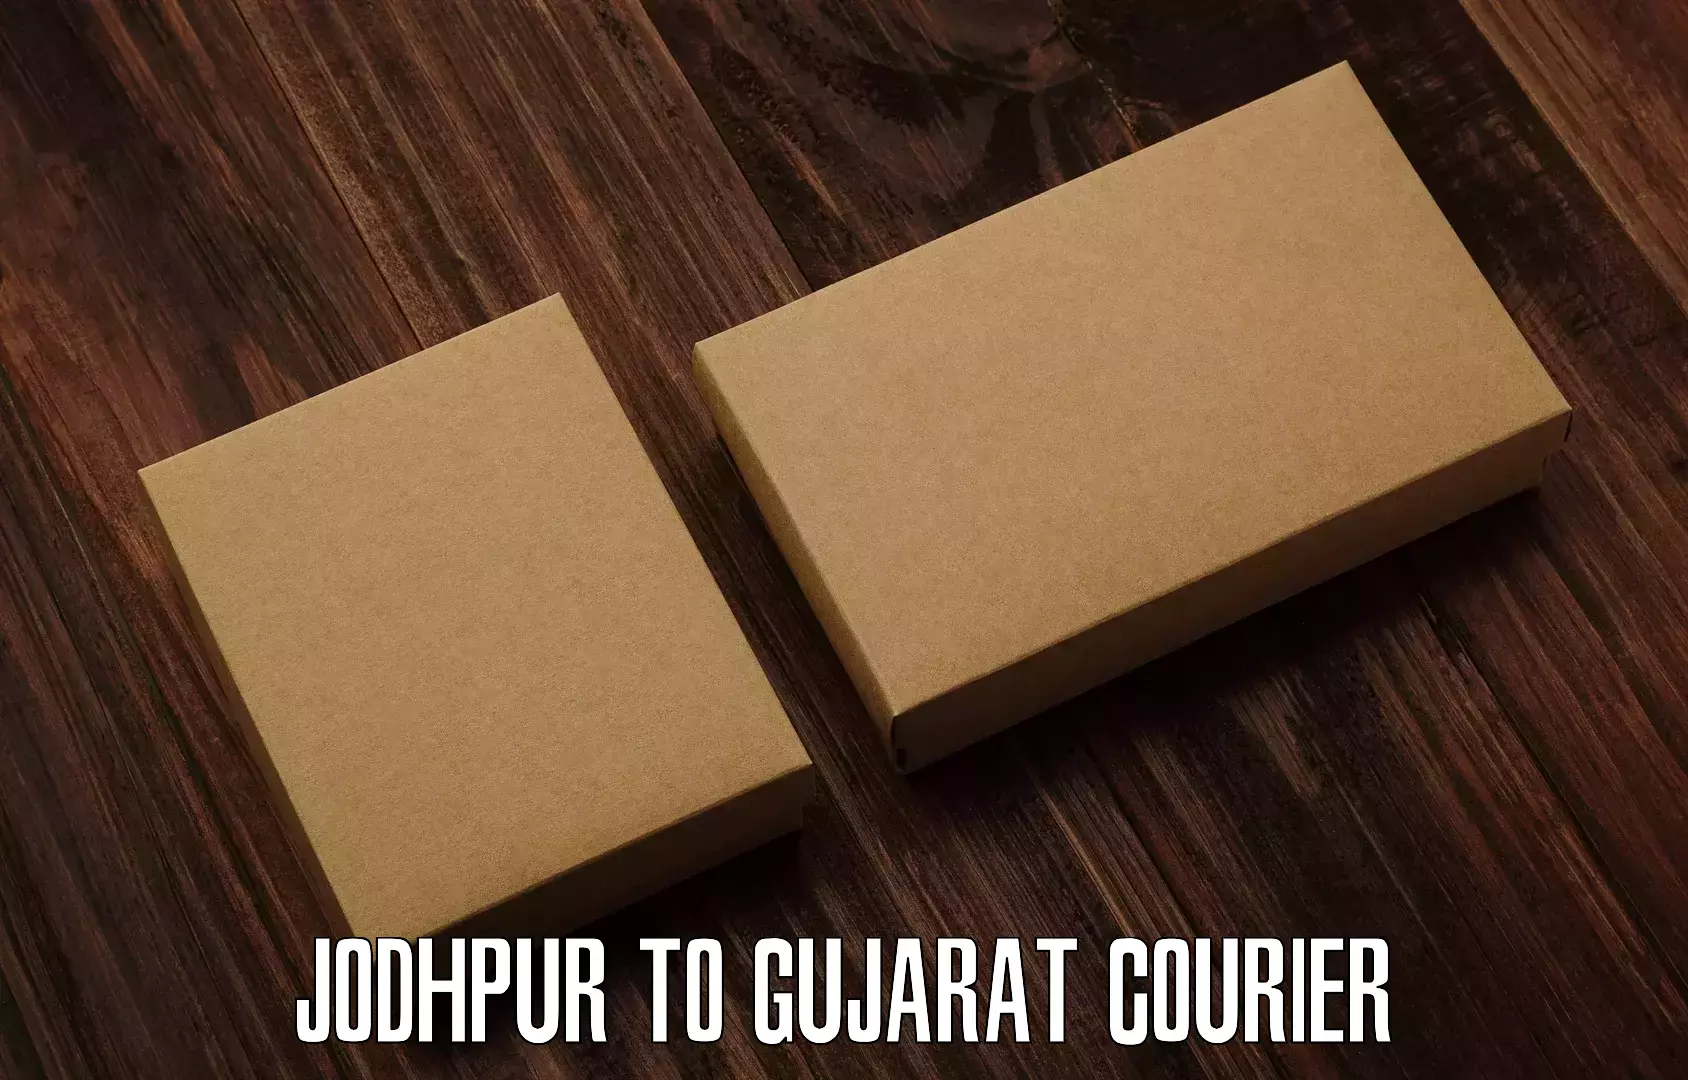 Express courier capabilities Jodhpur to Prantij